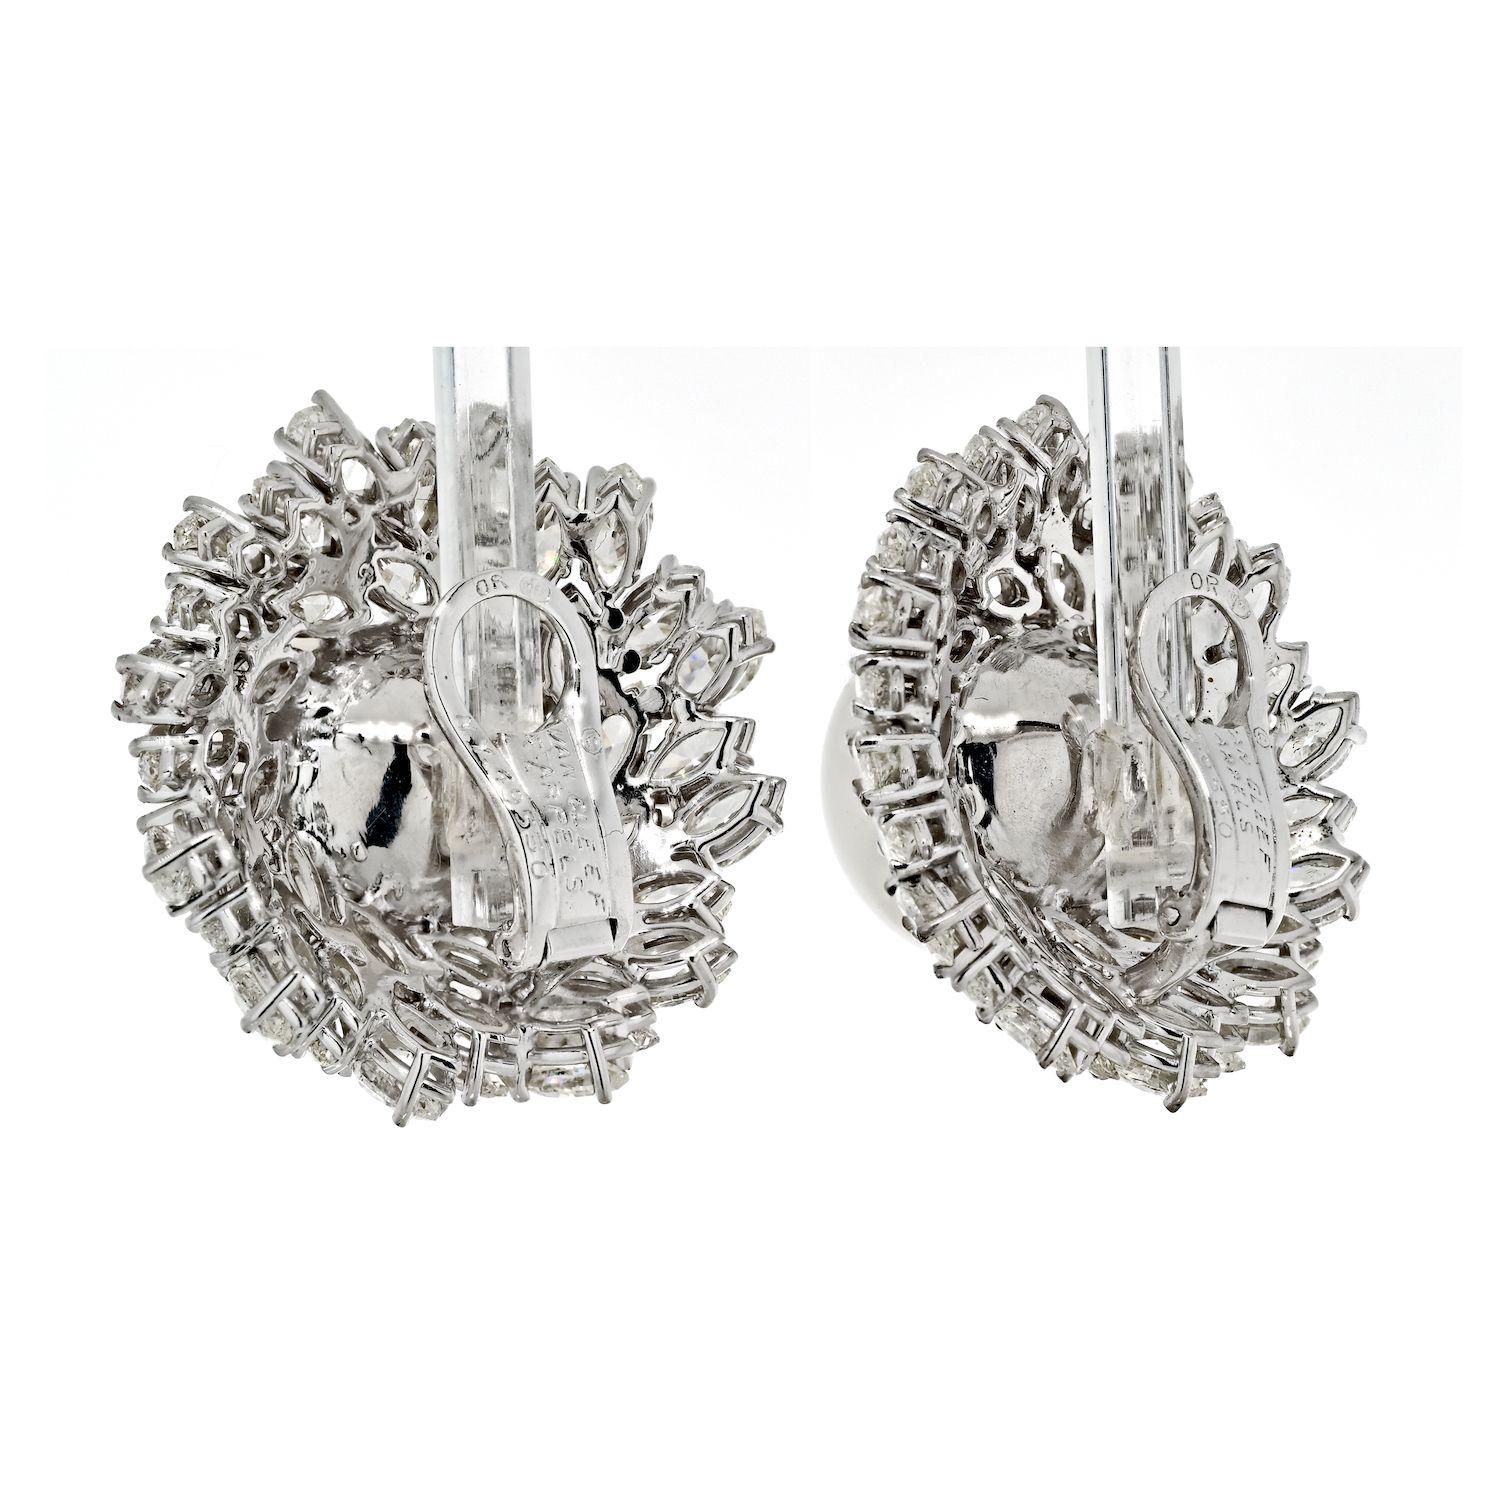 Die Van Cleef & Arpels Estate Diamant- und Perlenbomben-Ohrringe sind der Inbegriff von Eleganz und Luxus und ein atemberaubendes Zeugnis für die Kunstfertigkeit edler Juwelen. Diese Ohrringe aus exquisitem 18-karätigem Weißgold verströmen eine Aura